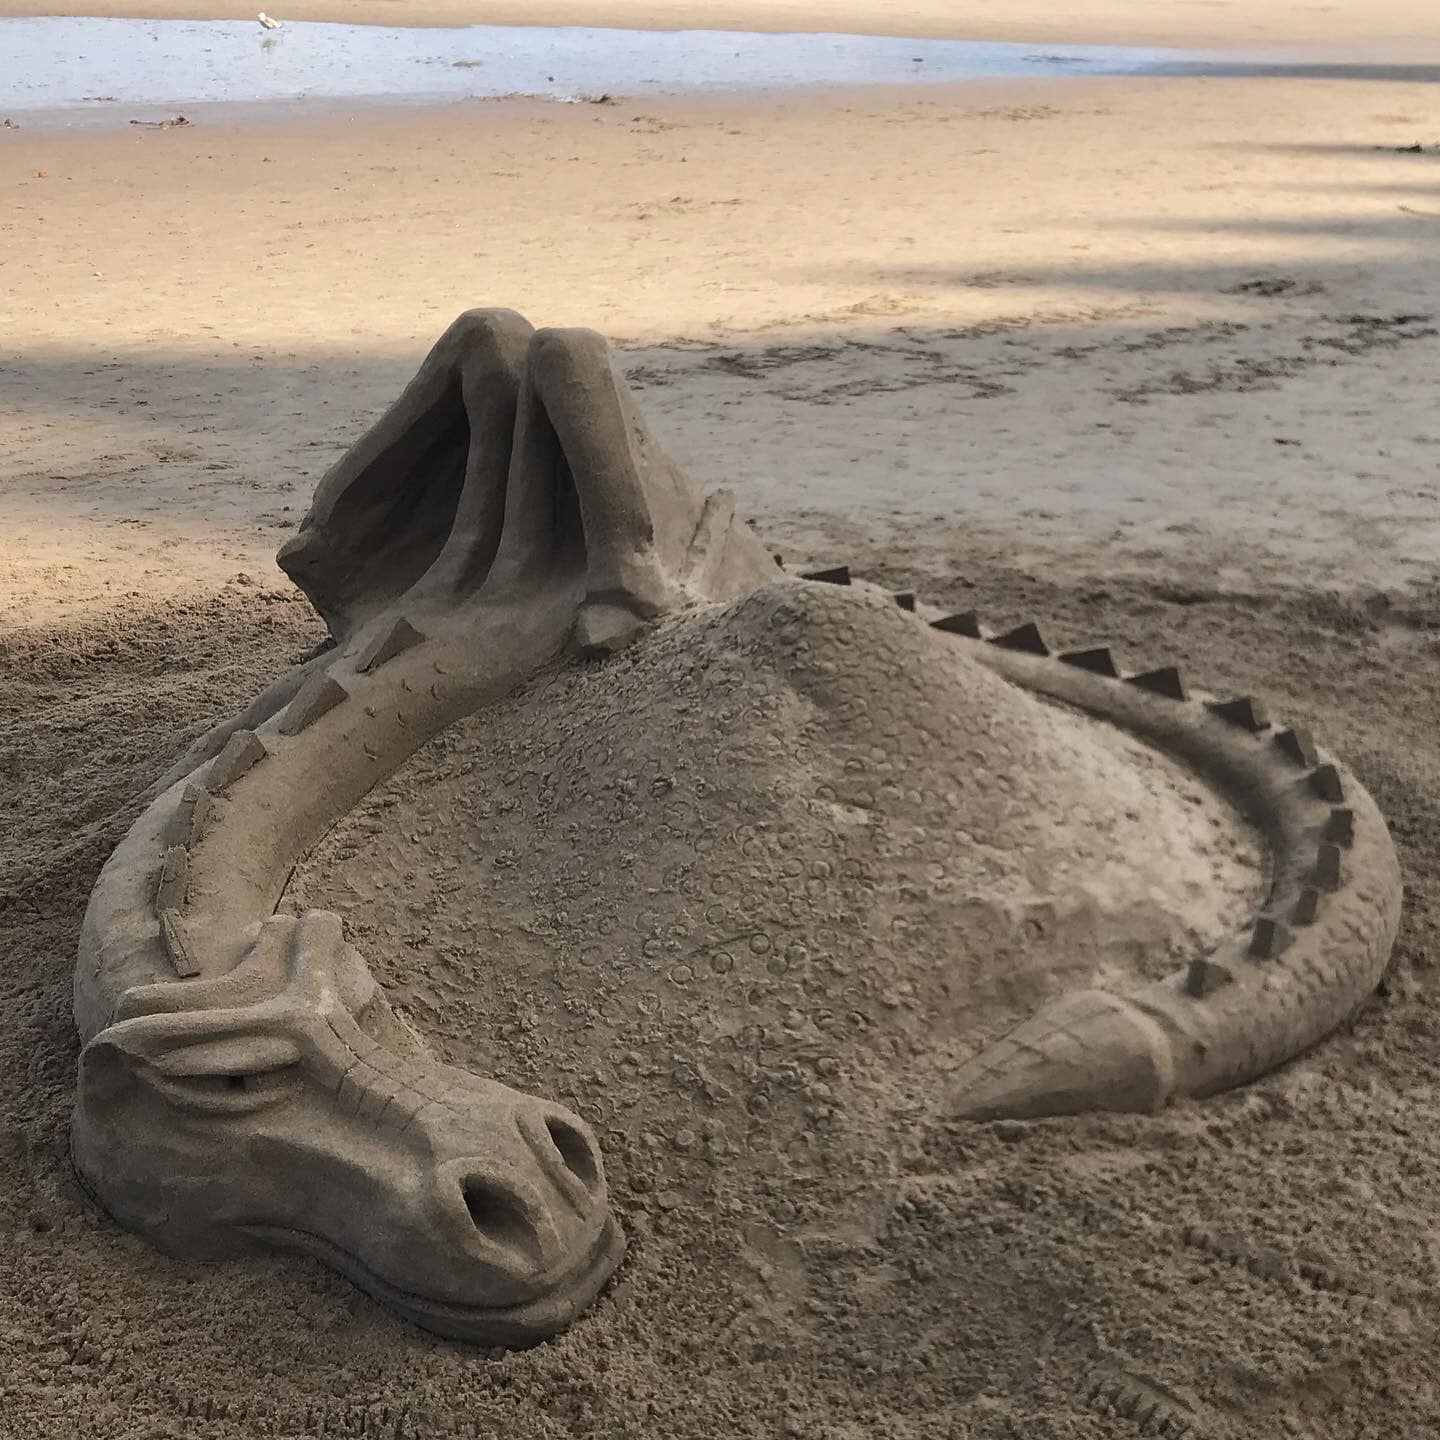 beach sand sculptures